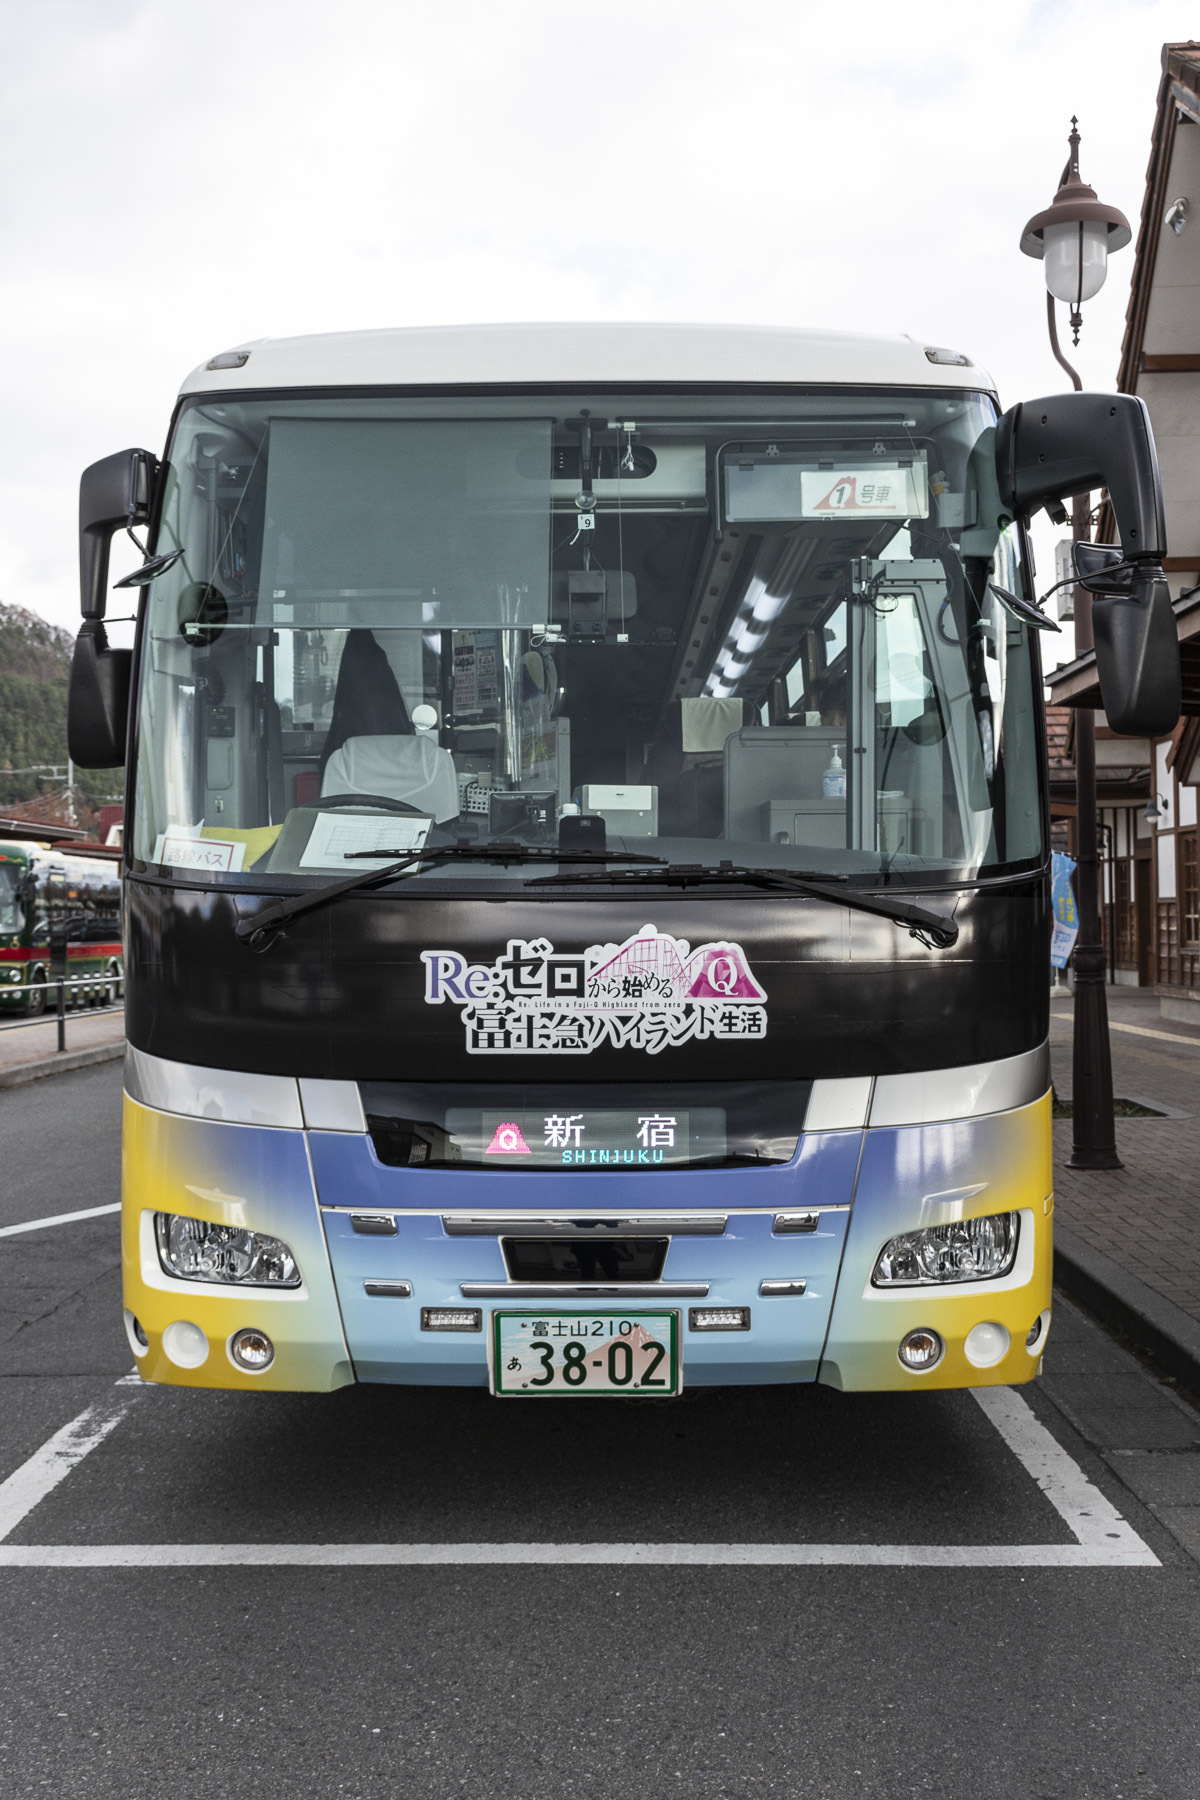 富士急バス / Re:ゼロから始める富士急ハイランド生活ラッピングバス_d0226909_13340865.jpg